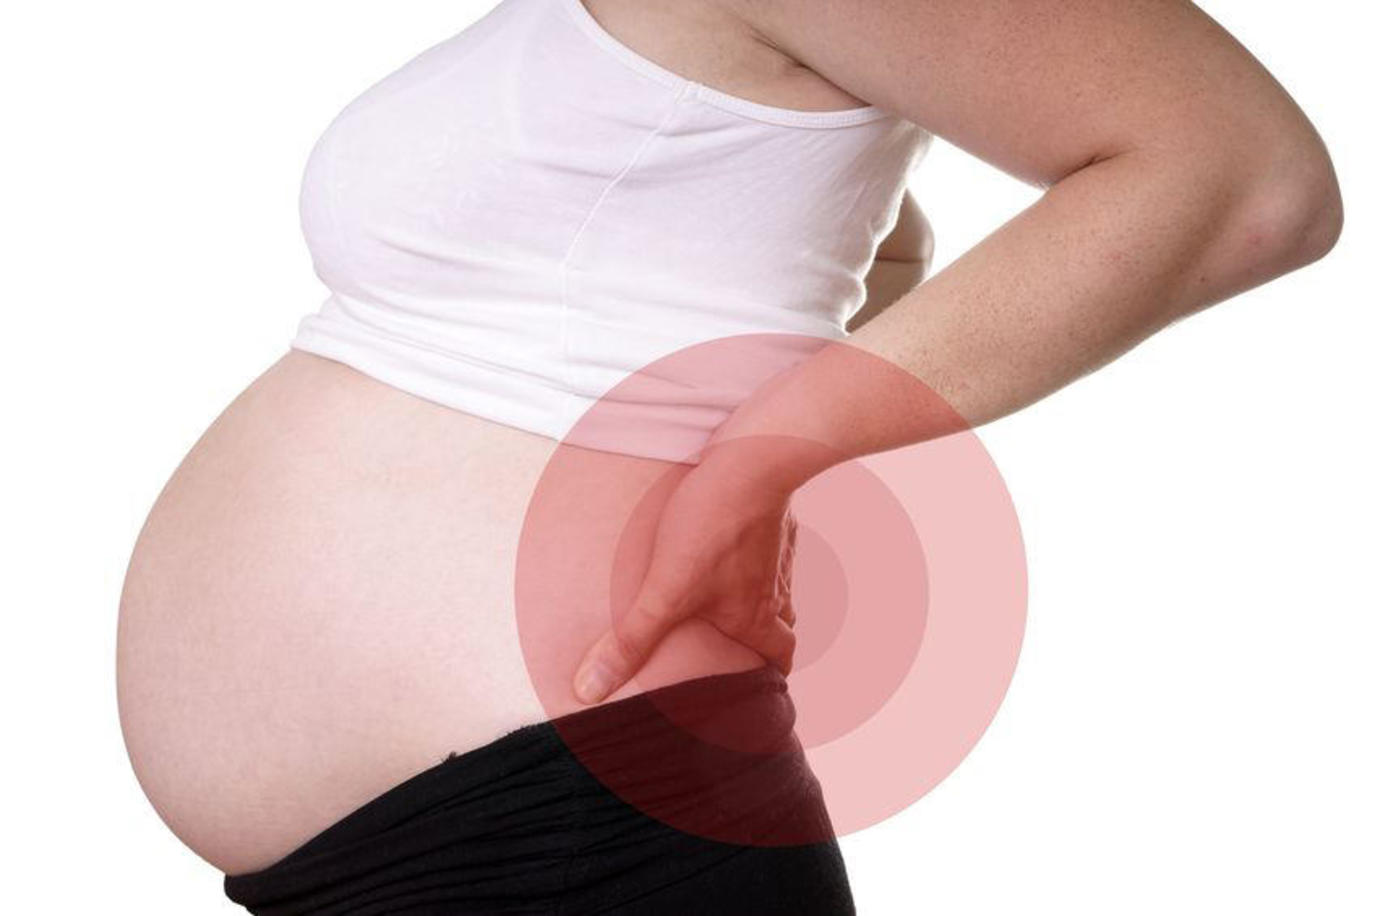 ما هي اسباب الام الظهر اثناء الحمل